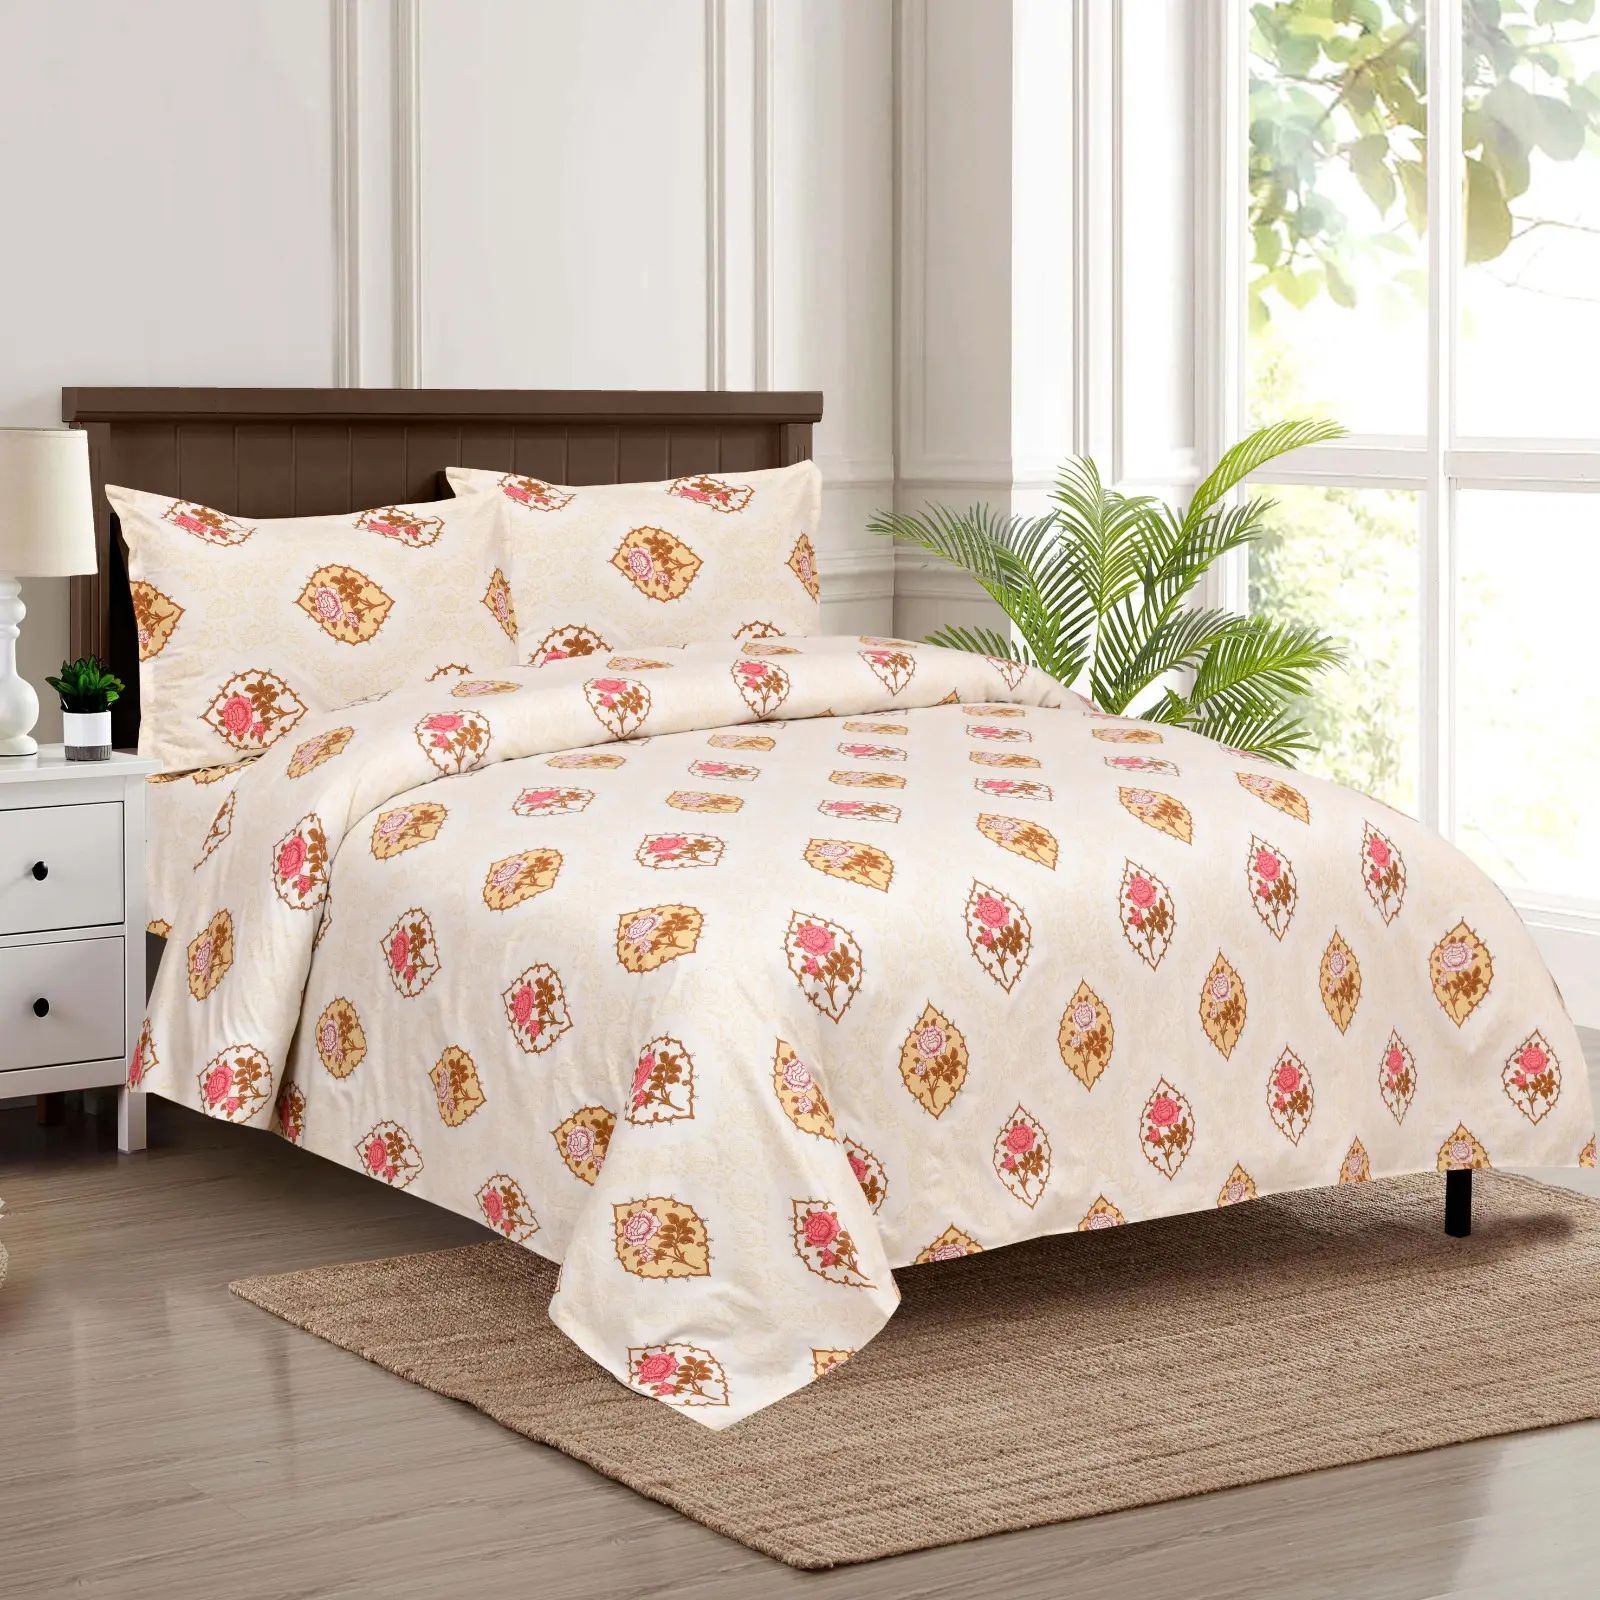 Venta caliente 100% algodón juego de cama personalizado juego de sábanas de lujo de algodón sábana impresa funda Nórdica